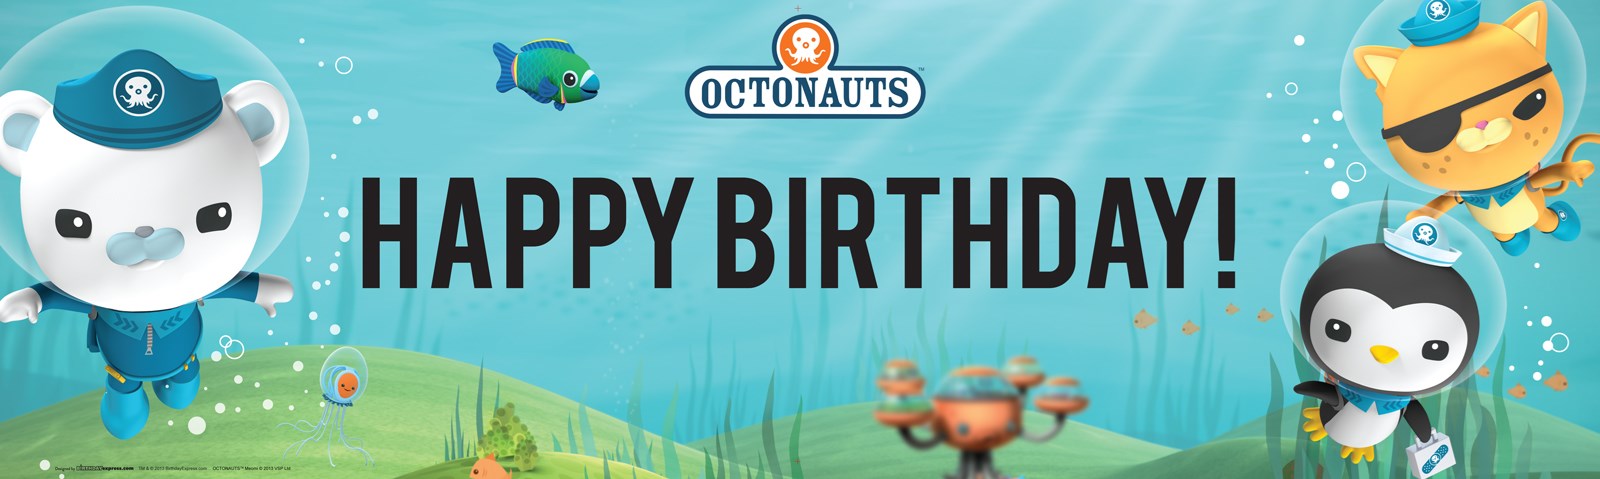 Octonauts Birthday Banner | BirthdayExpress.com